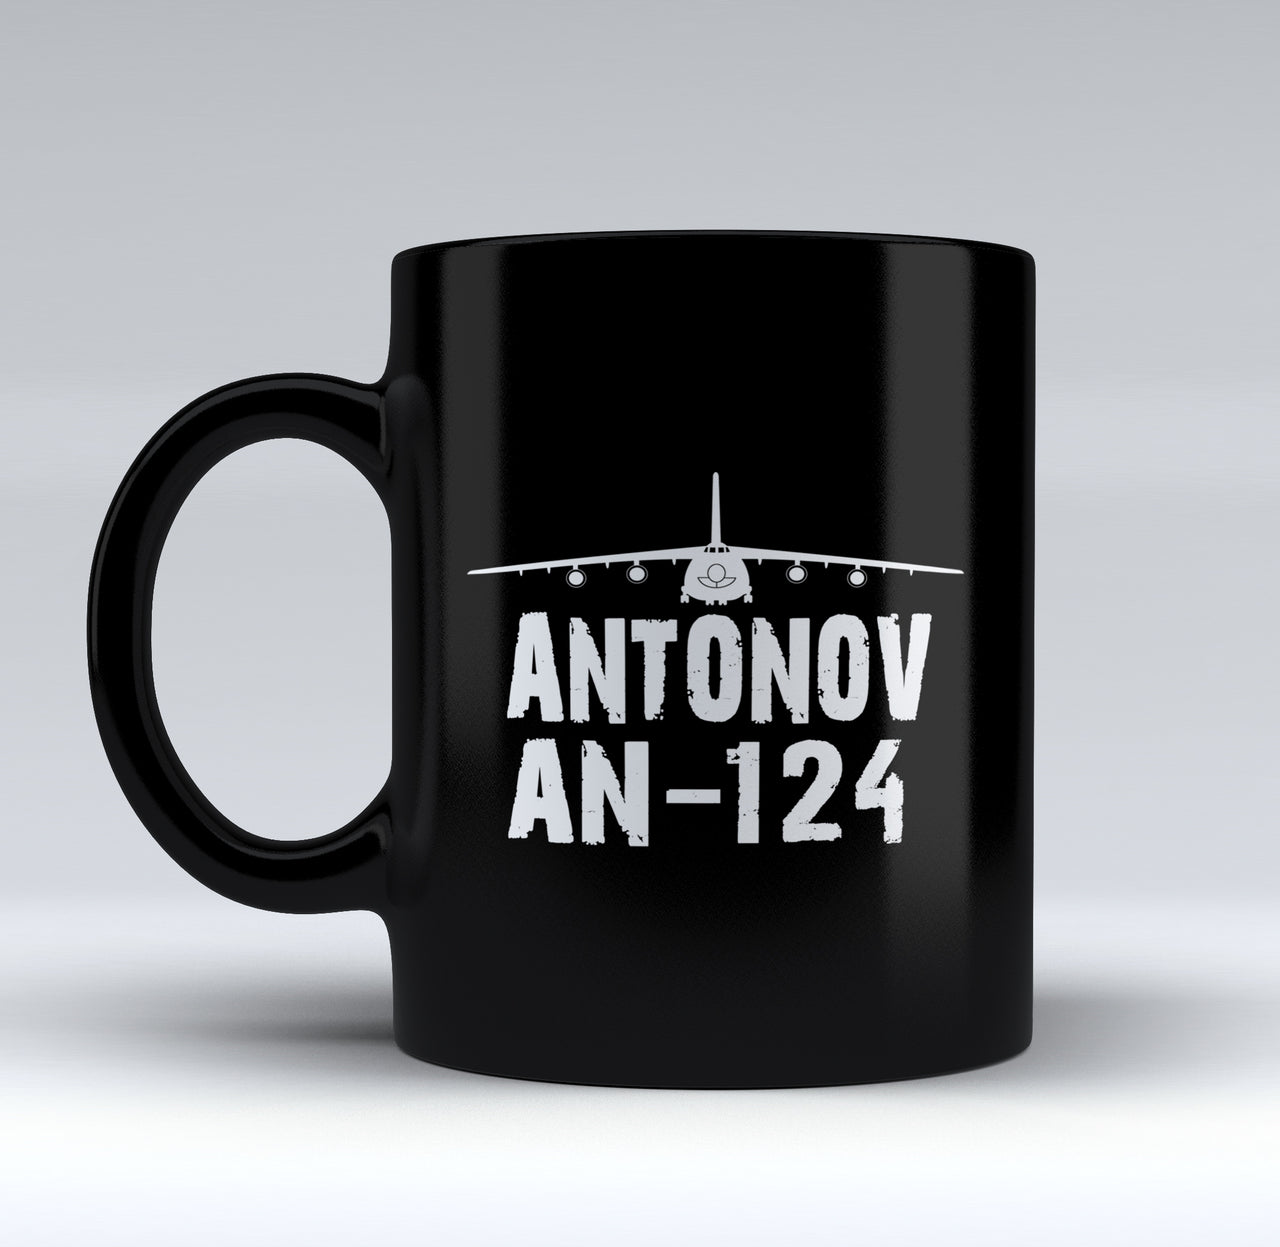 Antonov AN-124 & Plane Designed Black Mugs